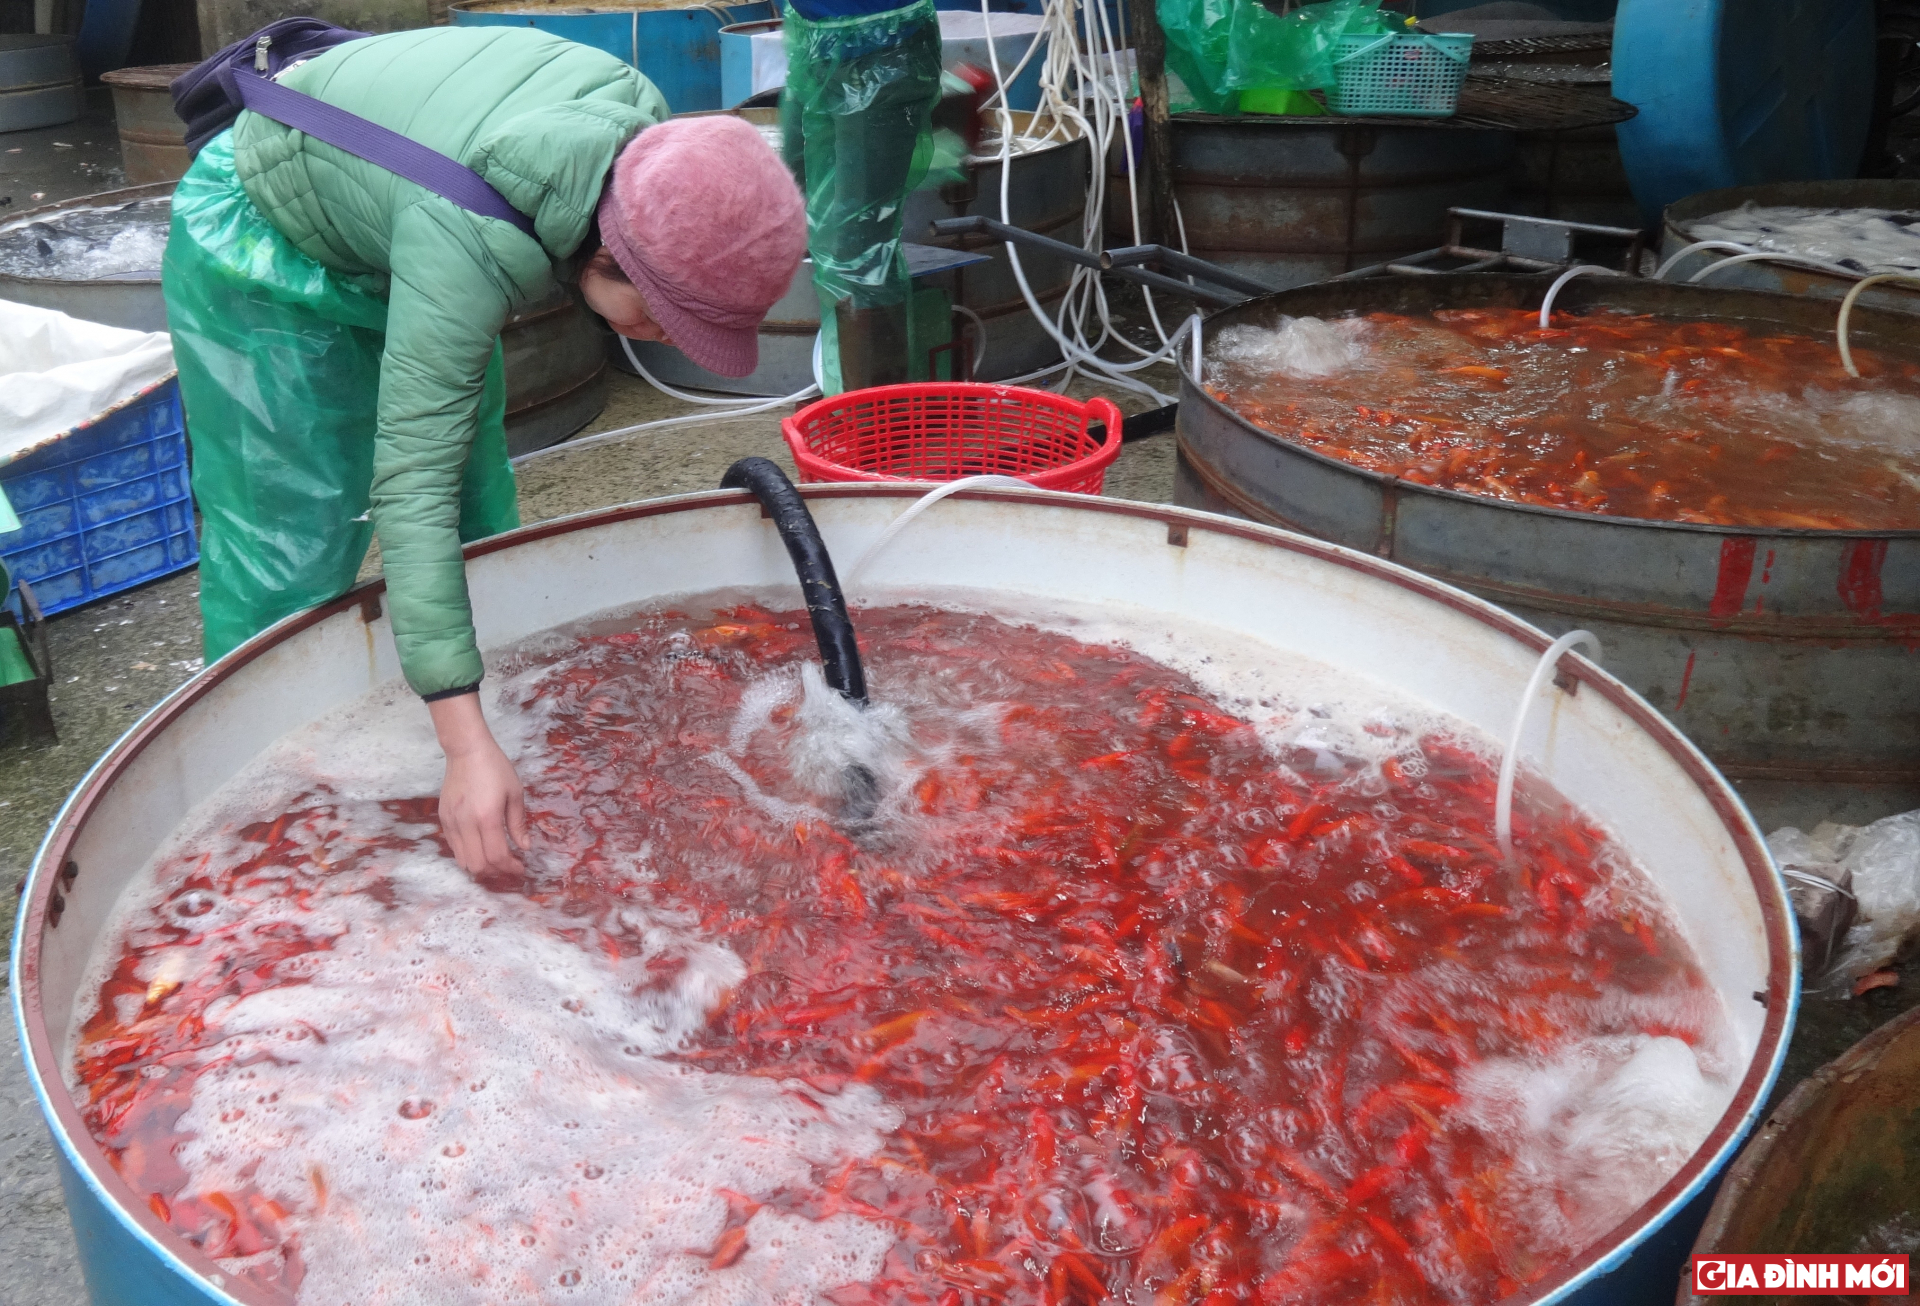 Tại chợ cá Yên Sở,1kg cá thường từ 20-25 con và các tiểu thương ở đây chỉ bán buôn cá chứ không bán lẻ từng cặp.